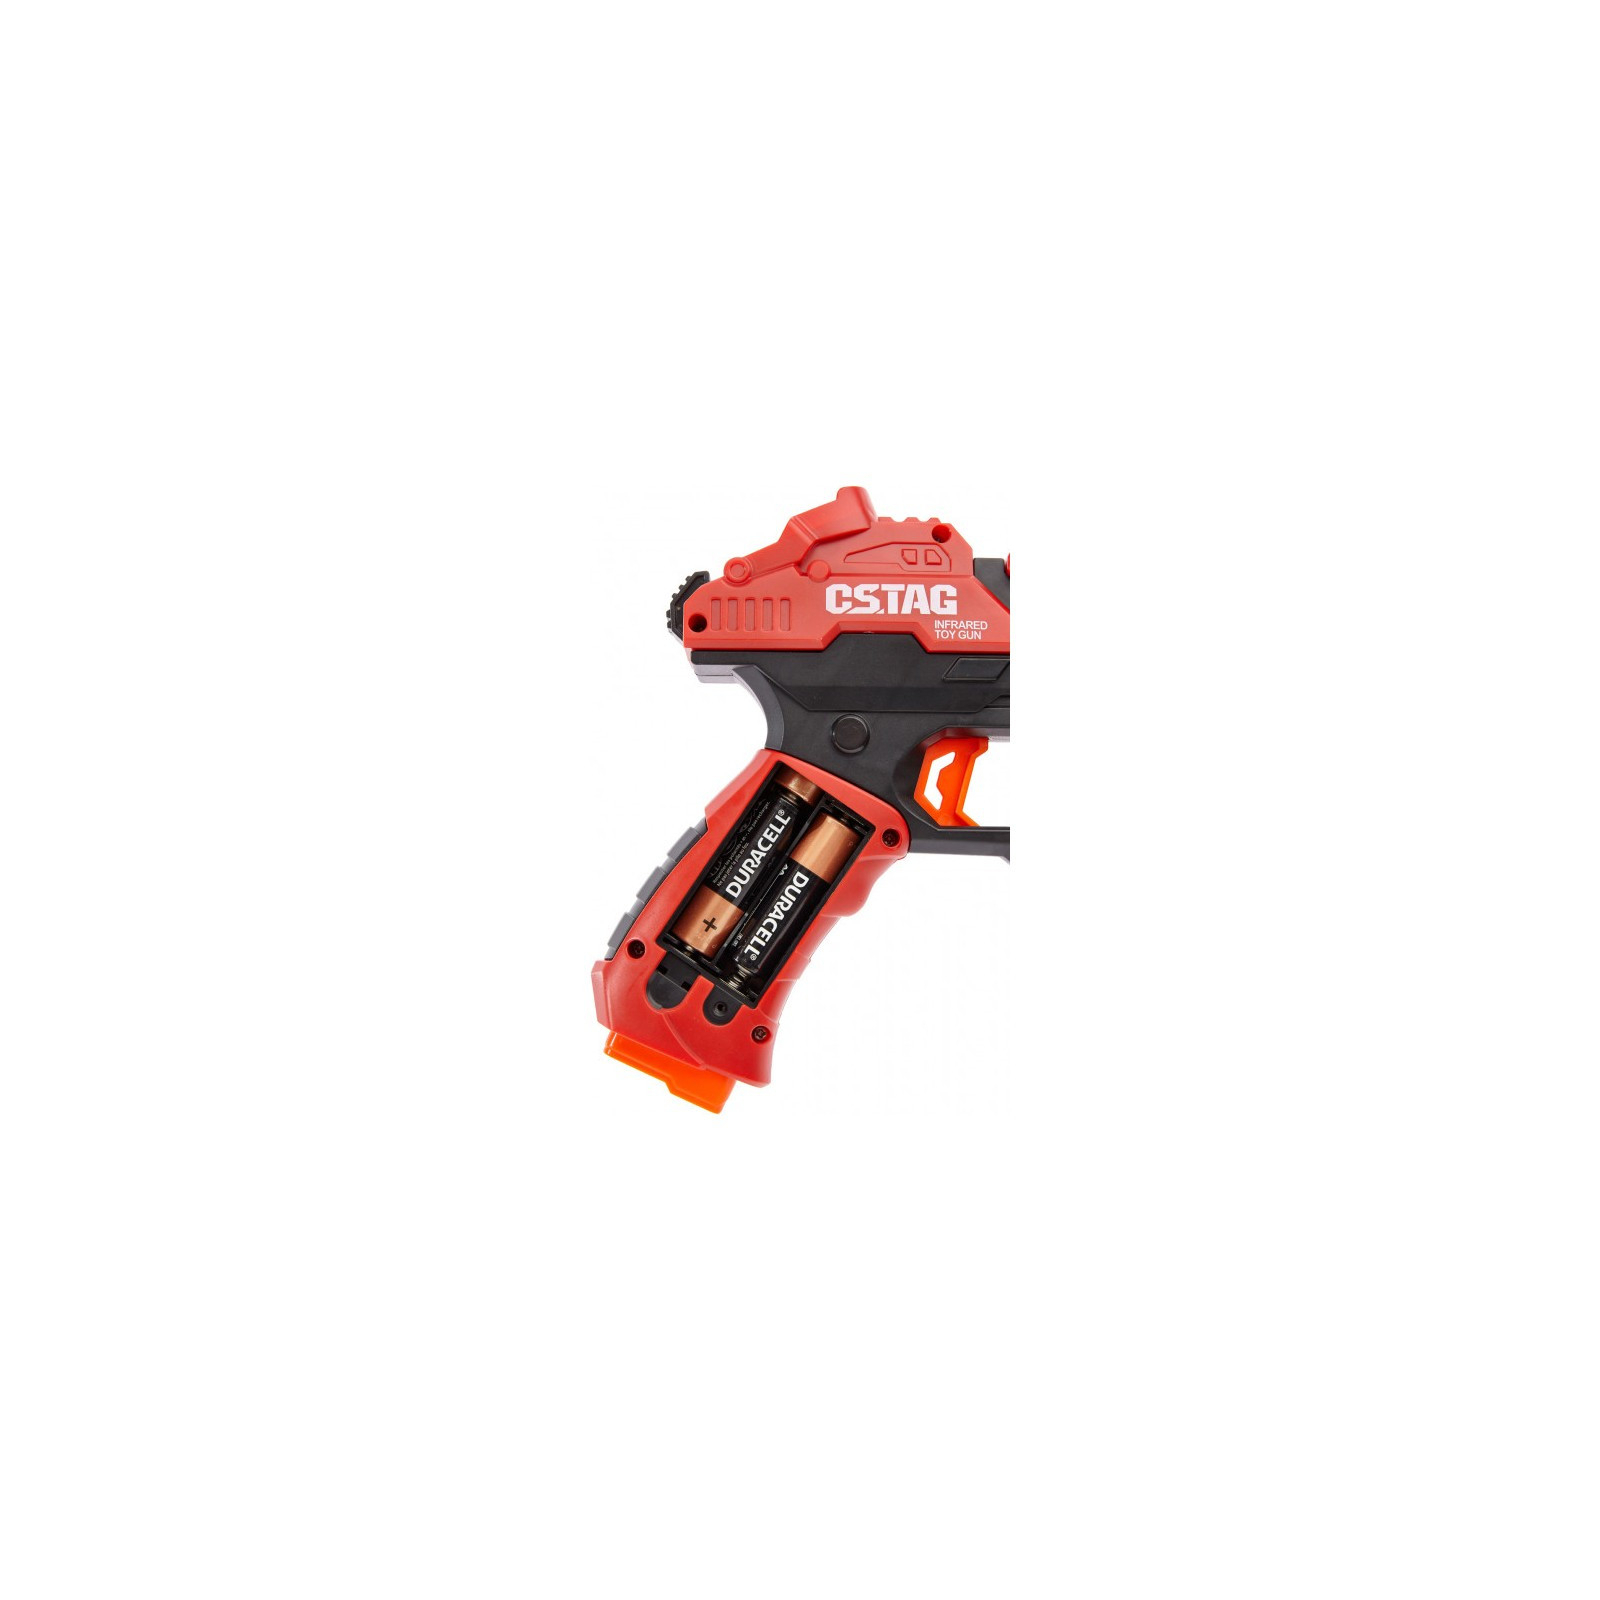 Игрушечное оружие Canhui Toys набор лазерного оружия Laser Guns CSTAG 2 пистолета + 2 жил (BB8913F) изображение 5